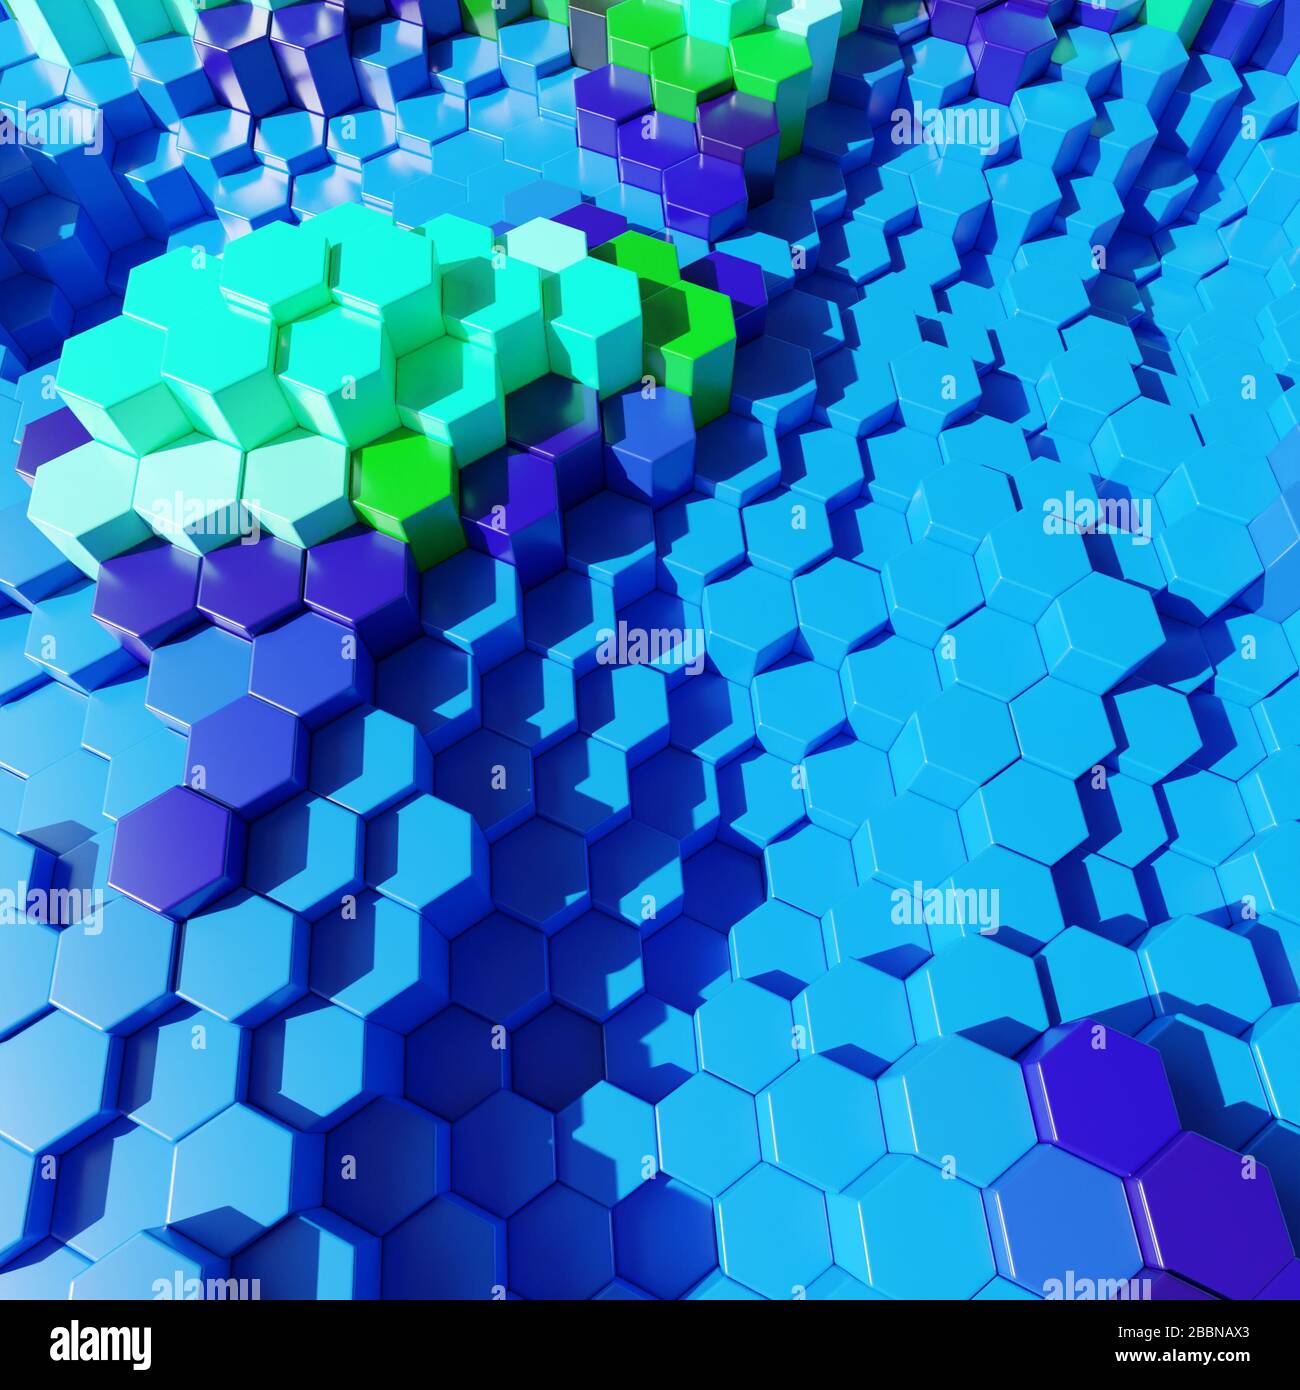 Motif cache plastique abstrait 3 dimensions hexagonal dans des couleurs bleu aquatique, illustration 3 dimensions Banque D'Images